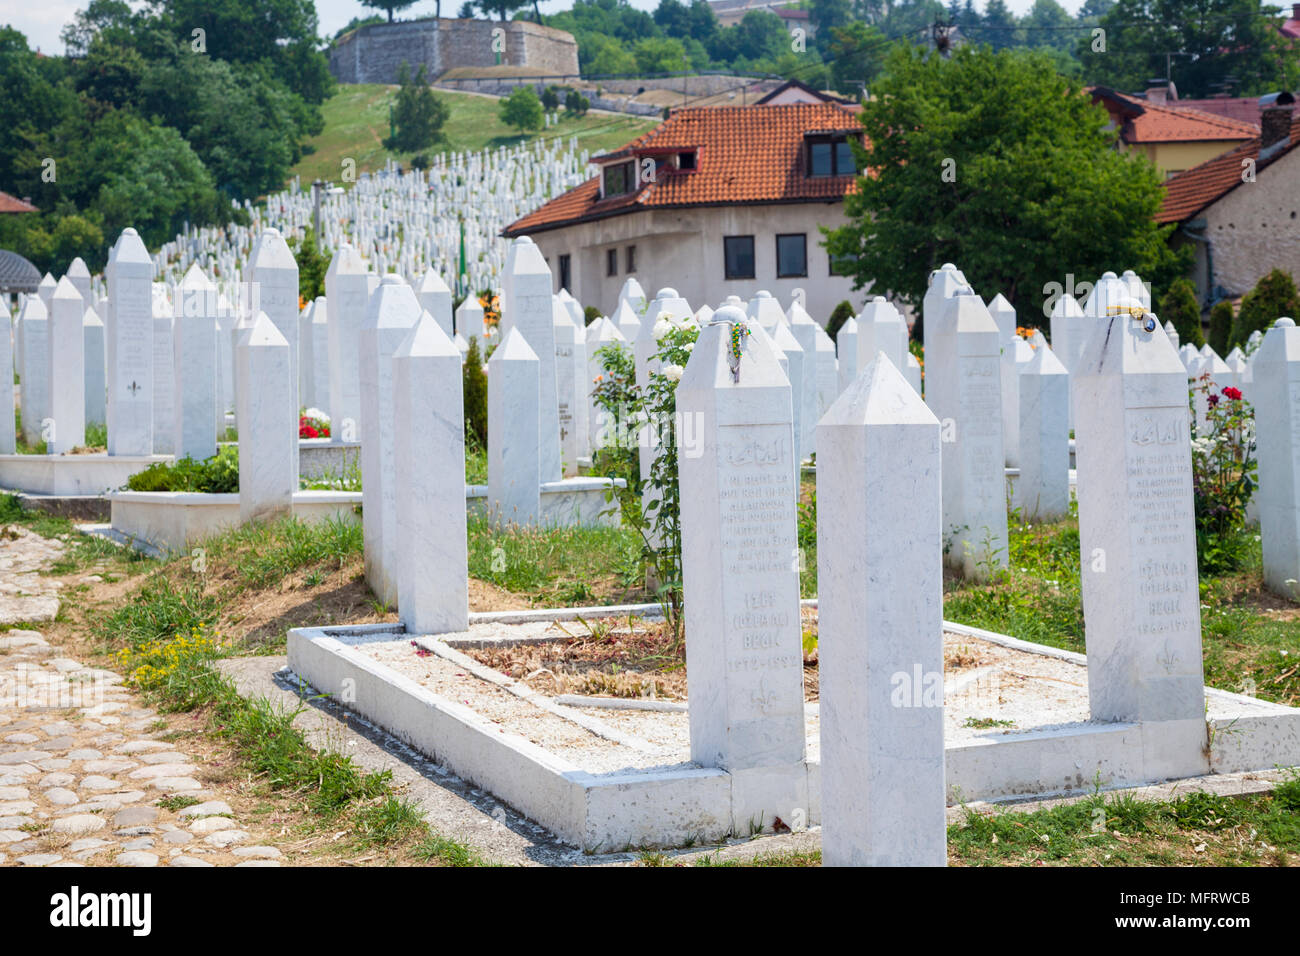 Grave stones at the Martyrs' Memorial Cemetery Kovači in Sarajevo, Bosnia and Herzegovina Stock Photo